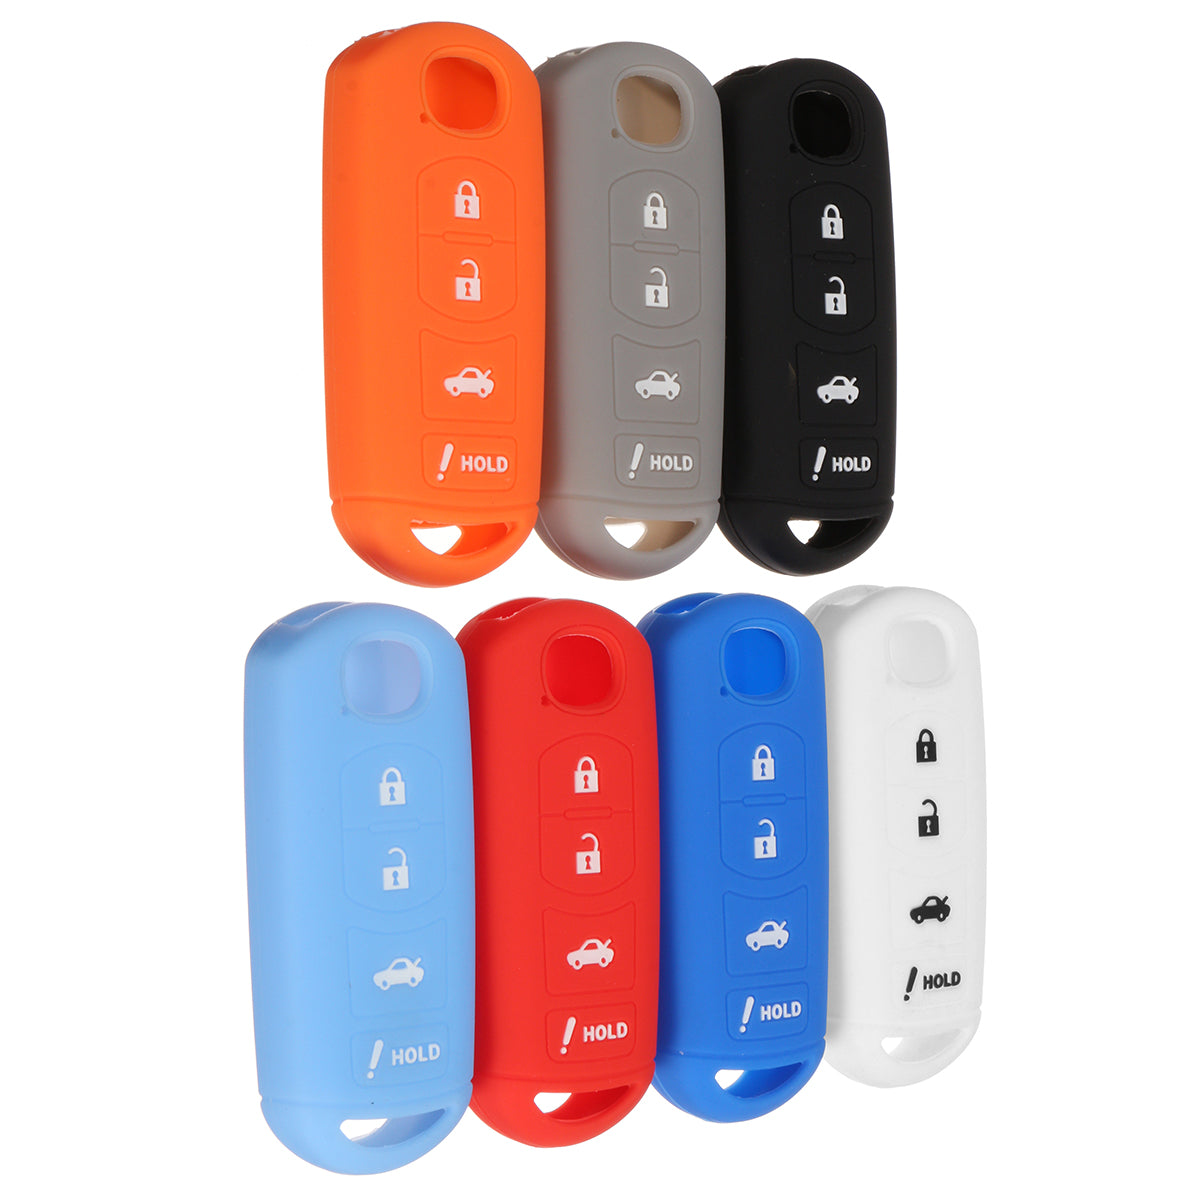 Orange Red 4 Button Remote Key Cover Case Shell Easy Installation For MAZDA 3 6 MX5 CX-5 CX-7 CX-9